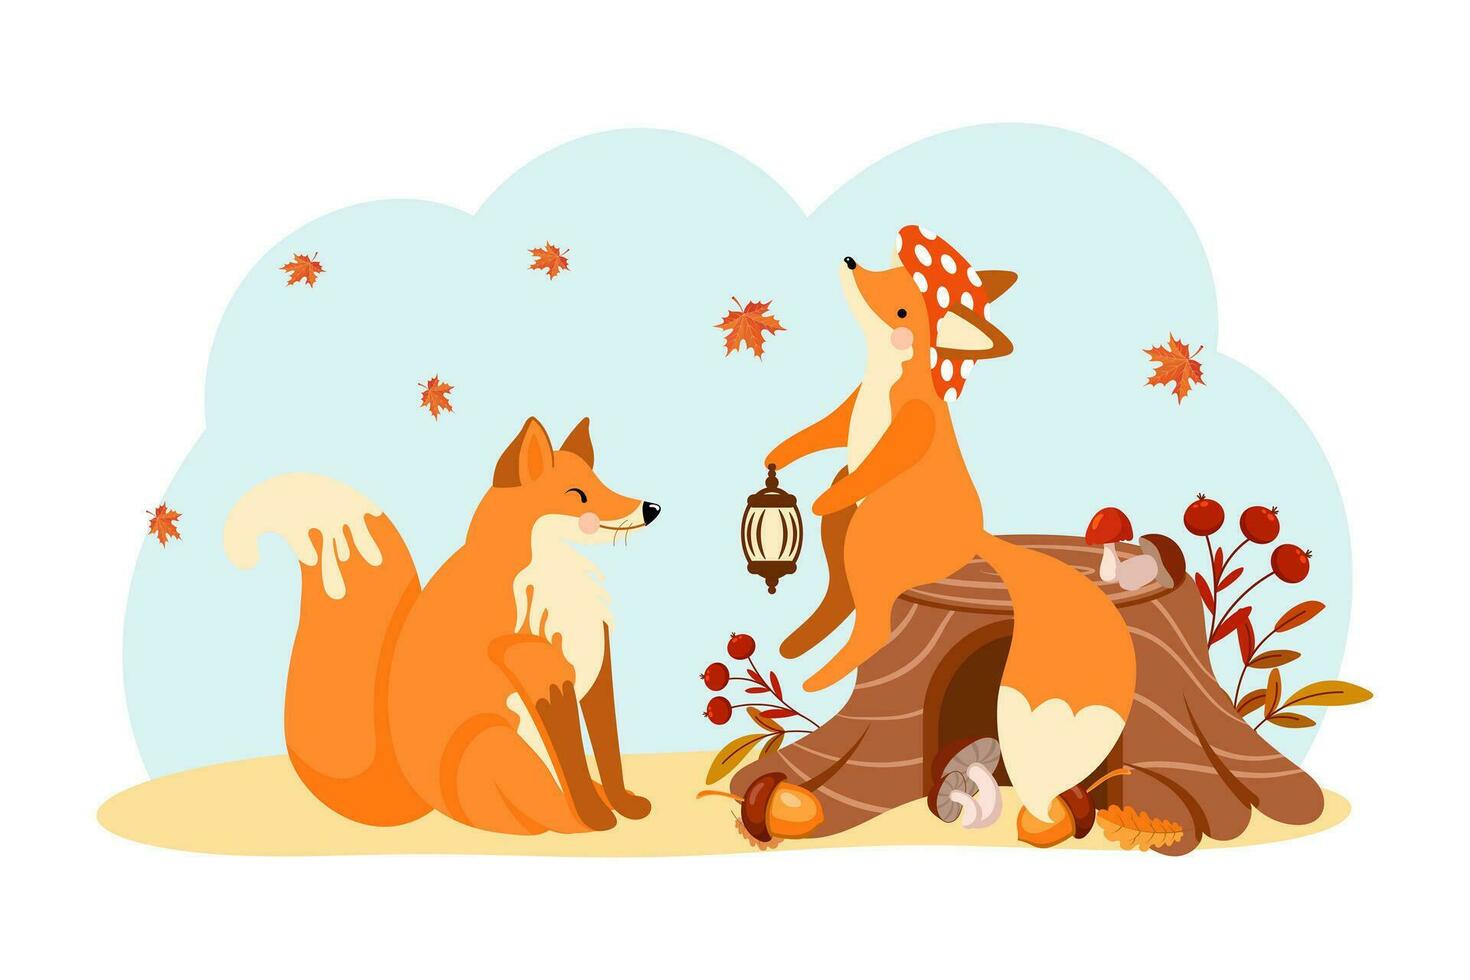 lindos zorros en el bosque de otoño, un zorro en un tocón y un zorro enamorado. ilustración de bebé de dibujos animados, impresión, vector